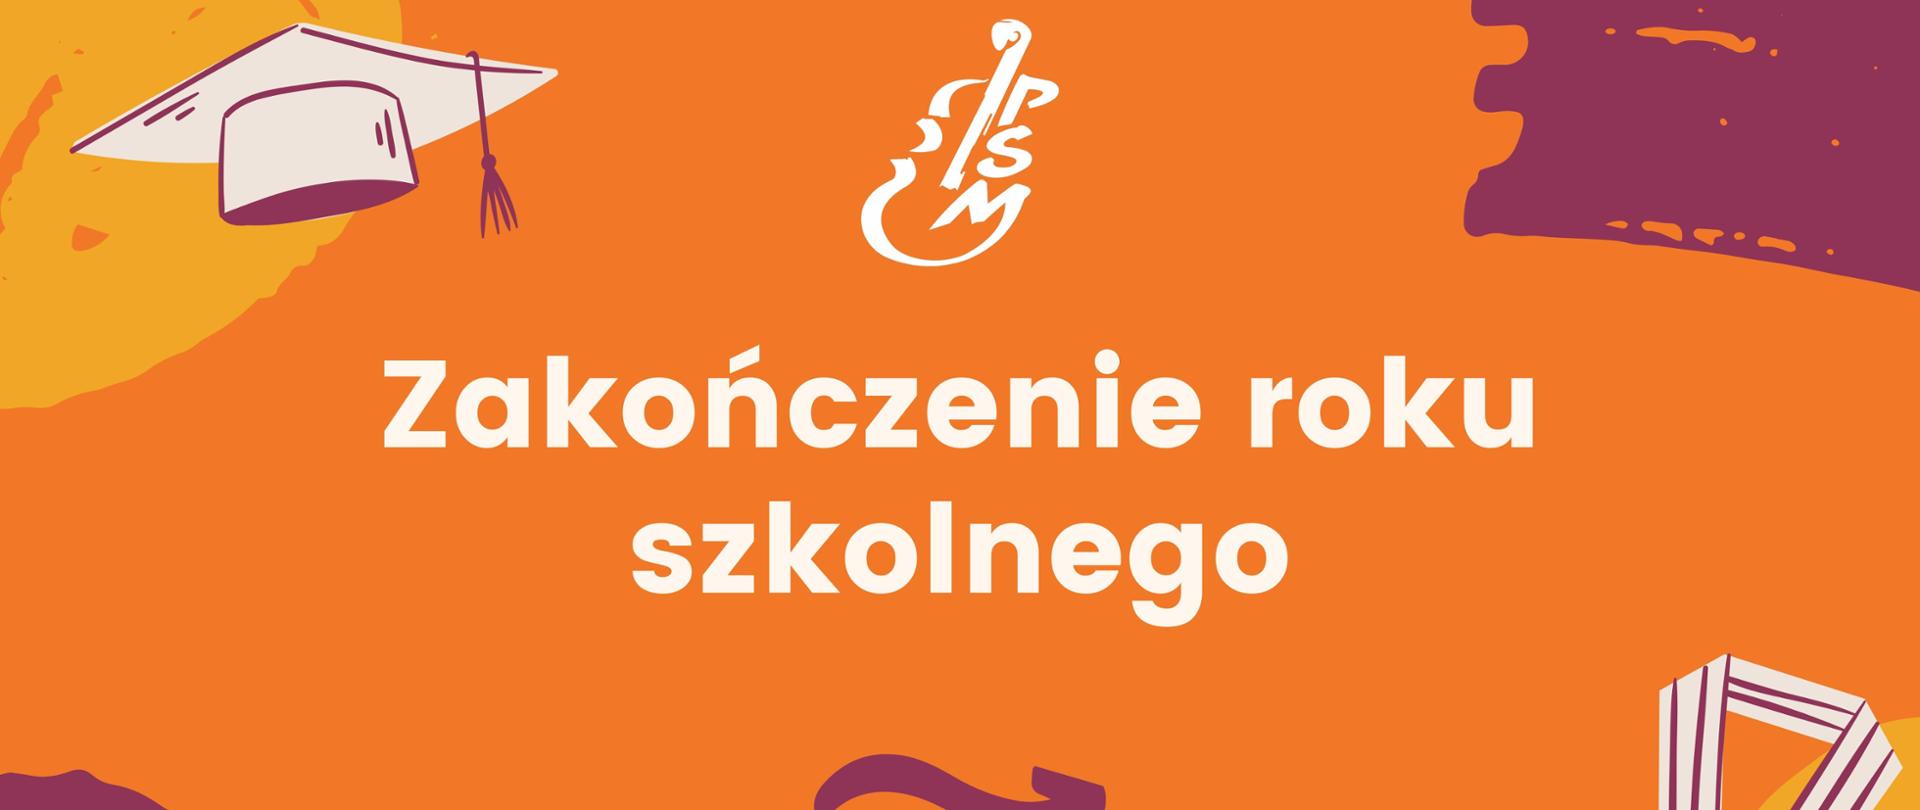 Pomarańczowy baner z napisem "Zakończenie roku szkolnego, piątek 21.06.2024 godz. 14:00" i logo szkoły